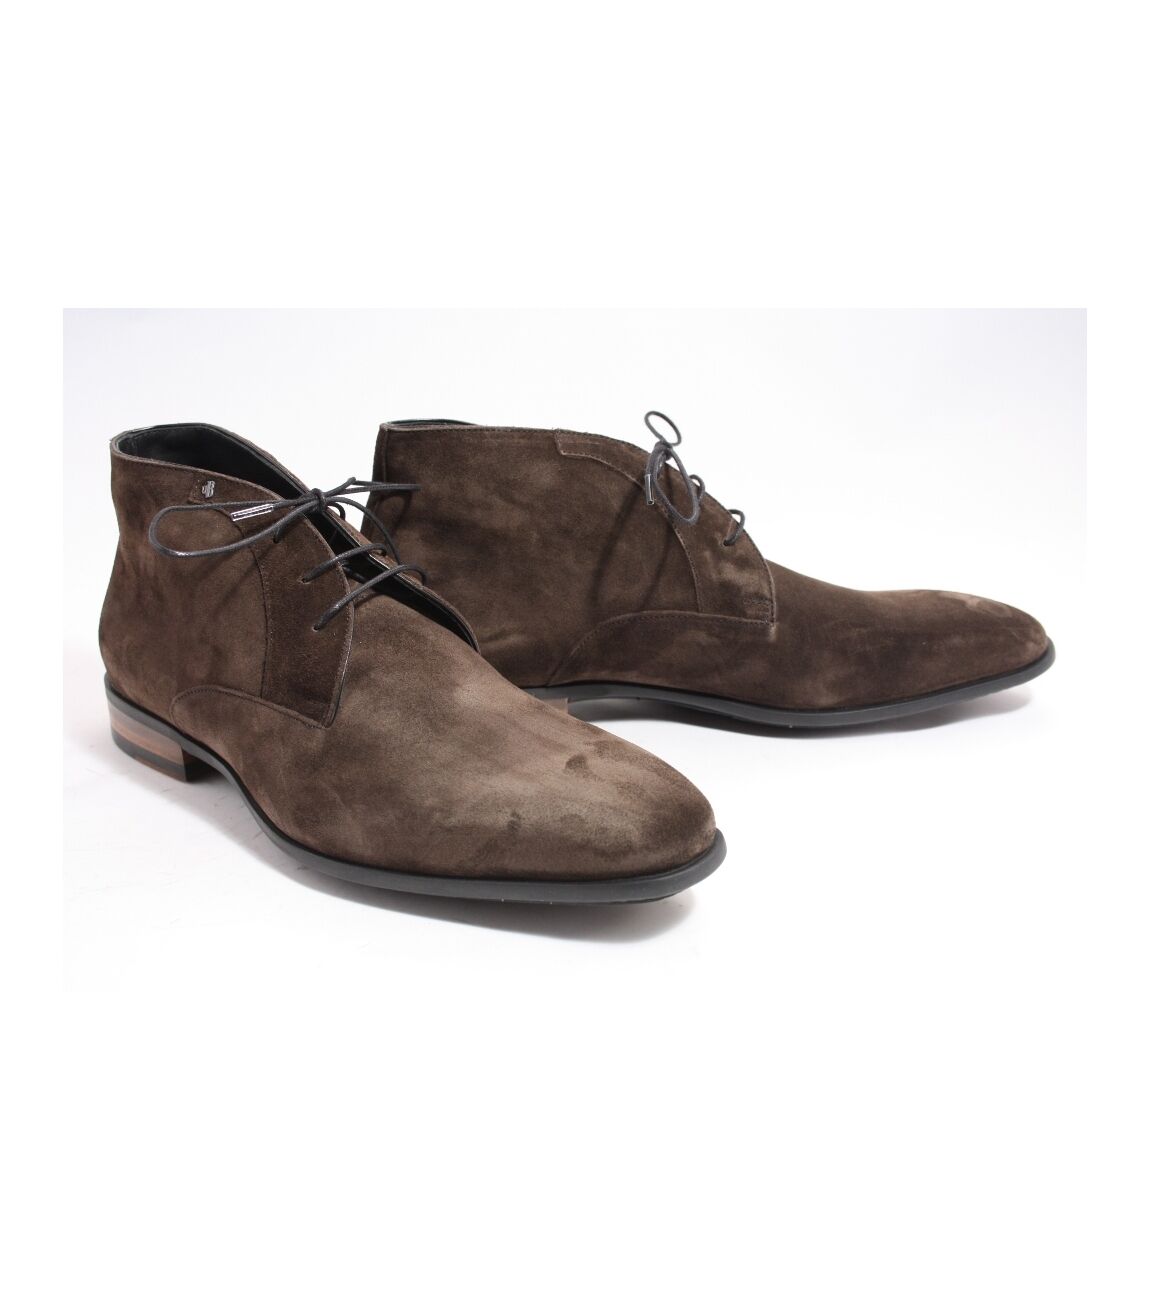 Van Bommel Heren boots gekleed bruin 11